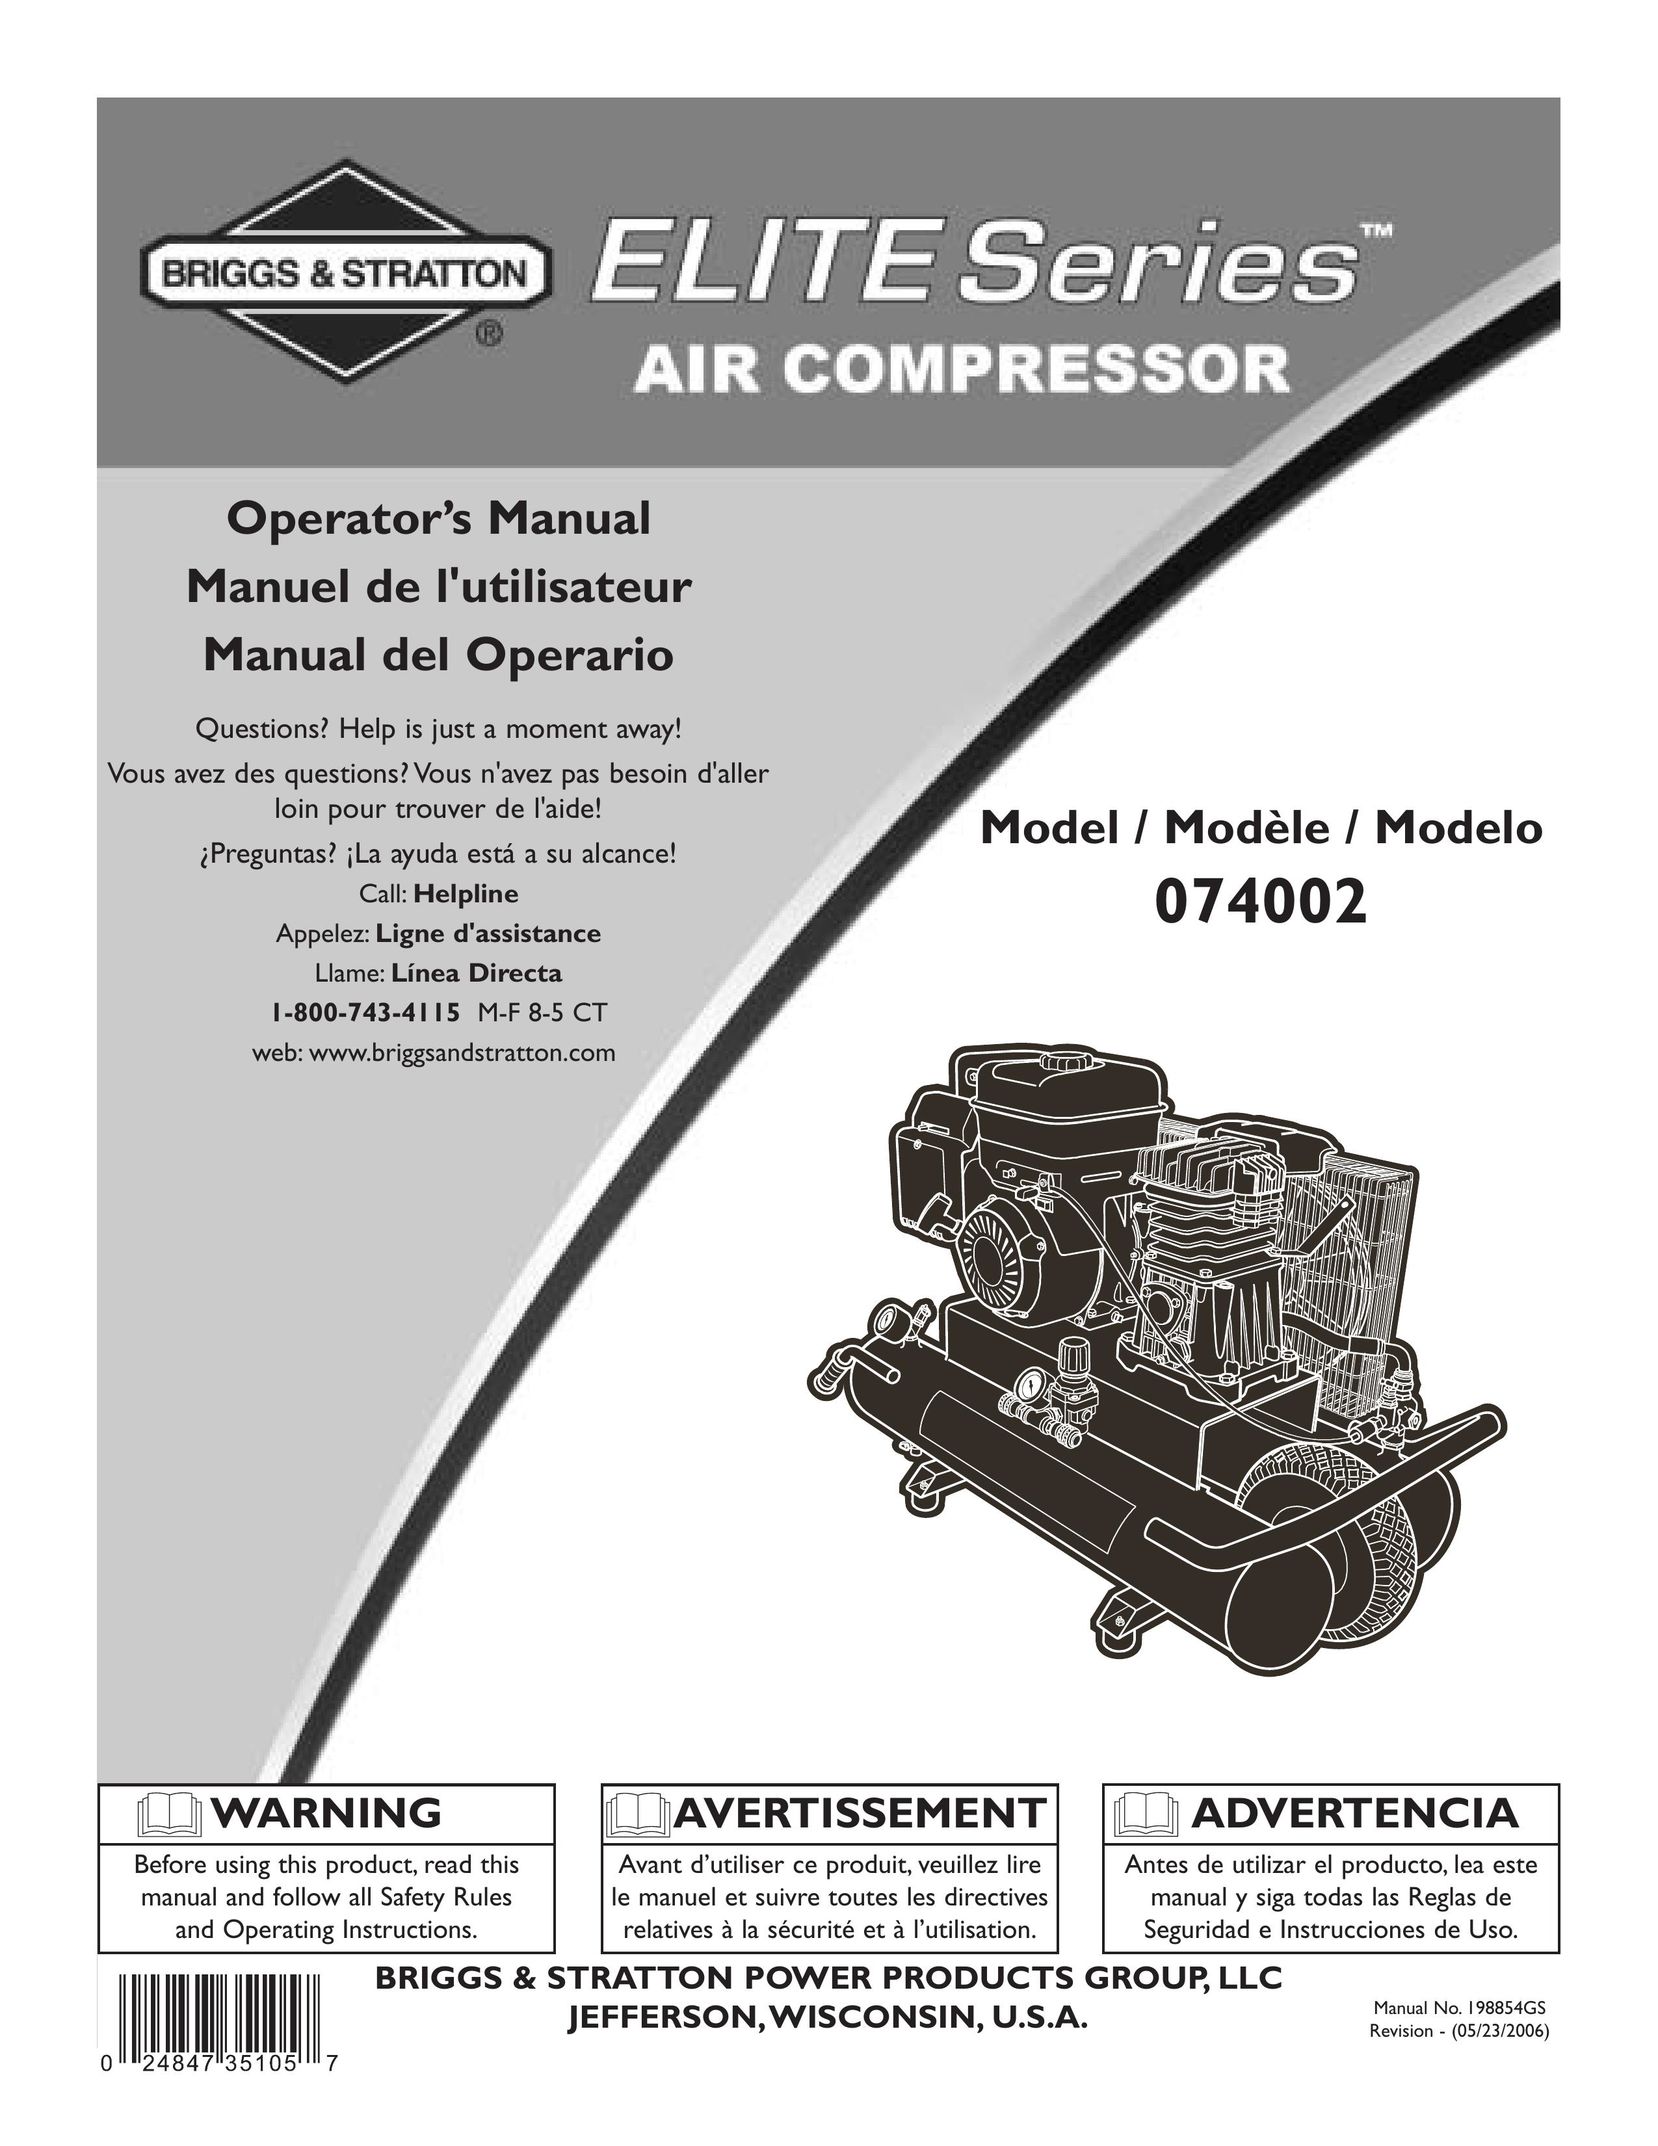 Briggs & Stratton 074002 Air Compressor User Manual